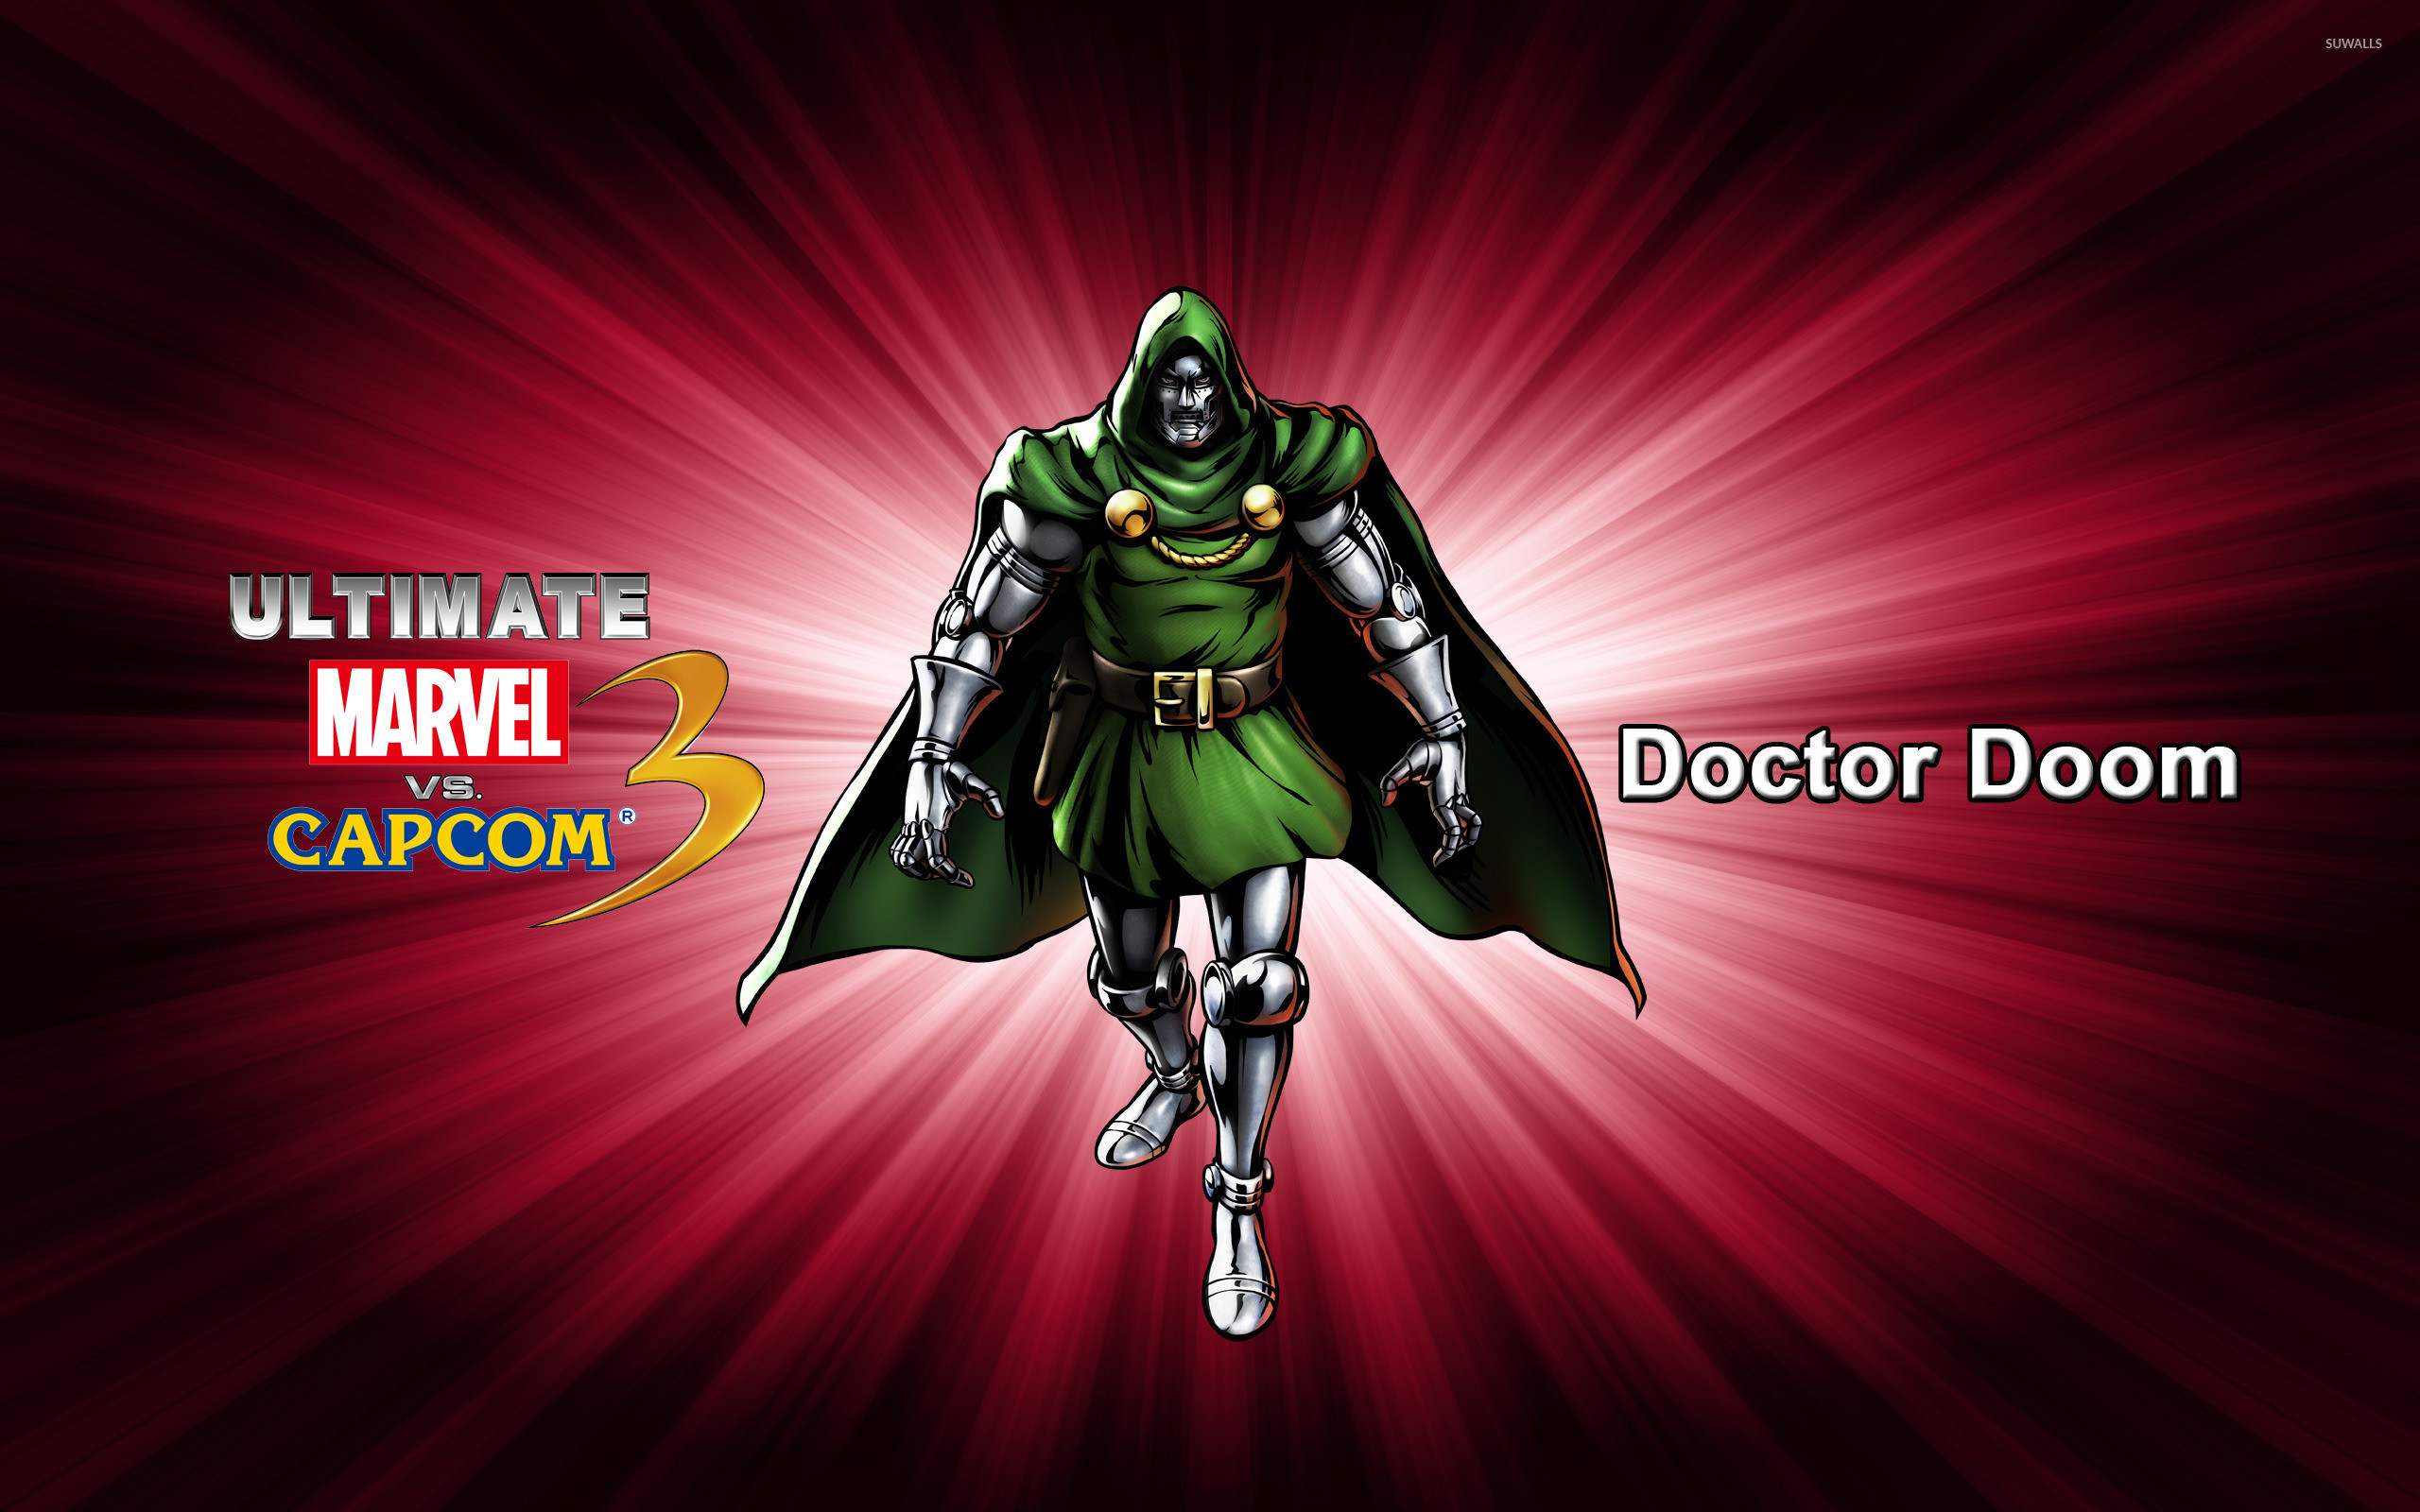 2560x1600  Doctor Doom - Ultimate Marvel vs. Capcom 3 wallpaper